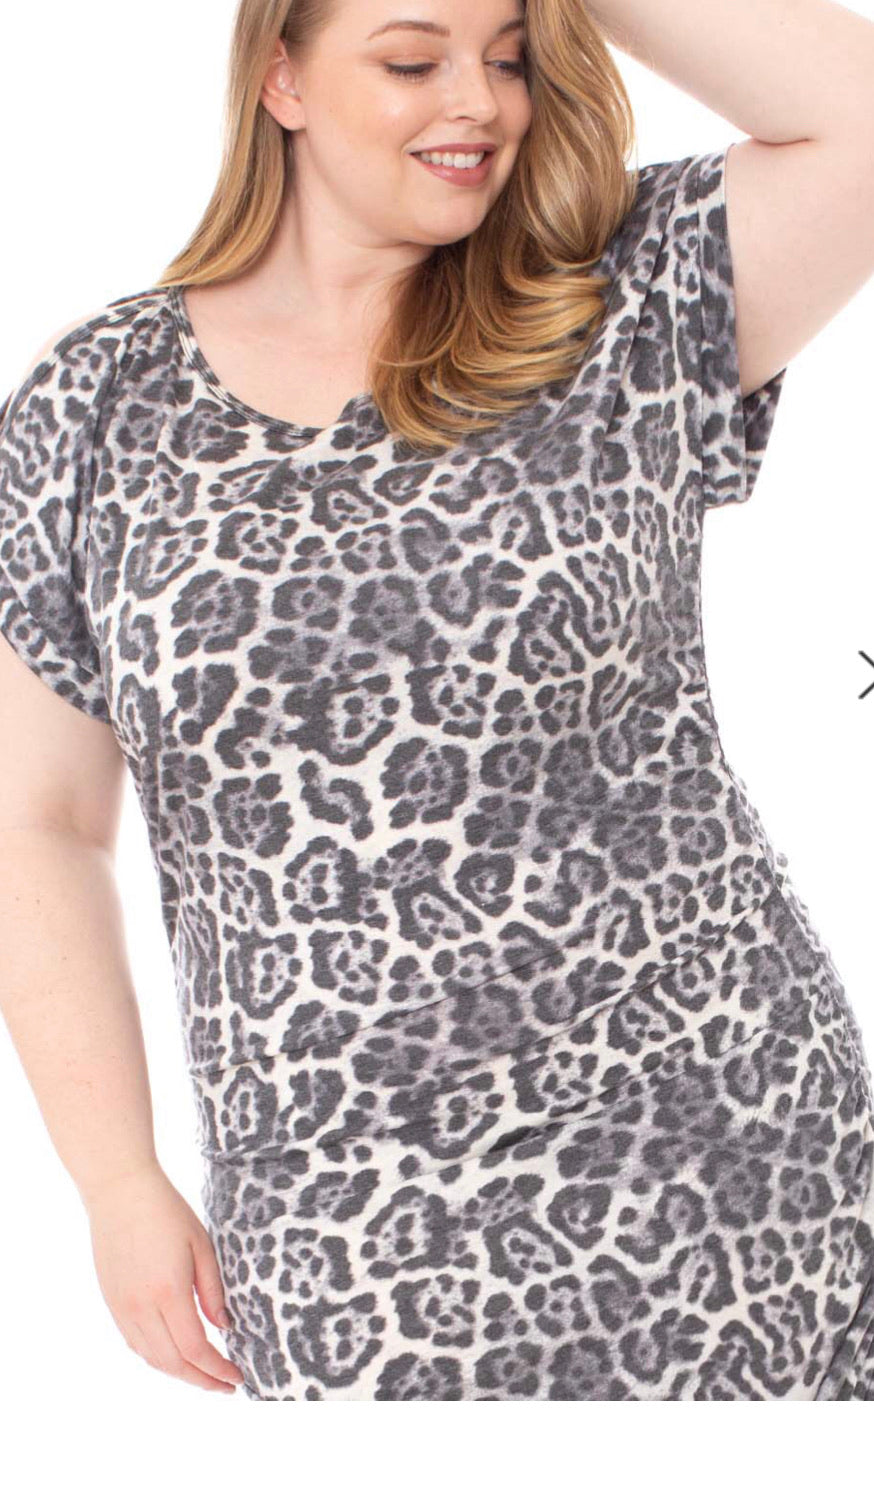 Leopard Print Soft Fabric Plus Size Mini Dress